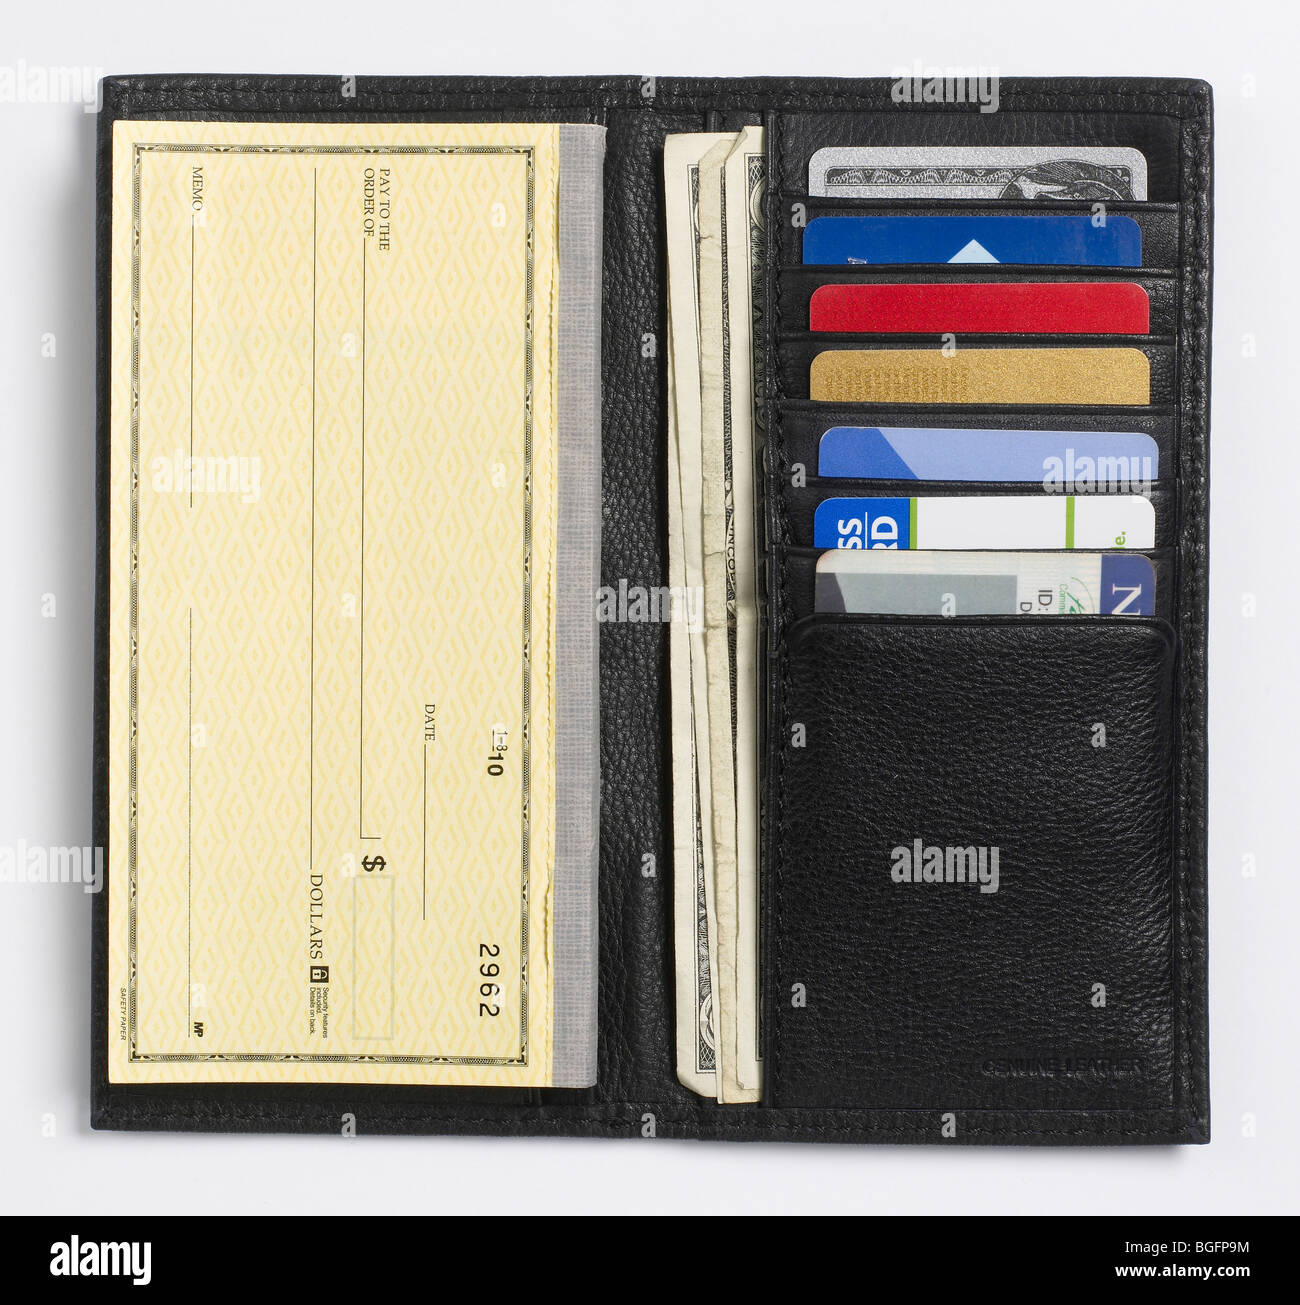 Porte-carte de crédit chéquier Billfold wallet Photo Stock - Alamy